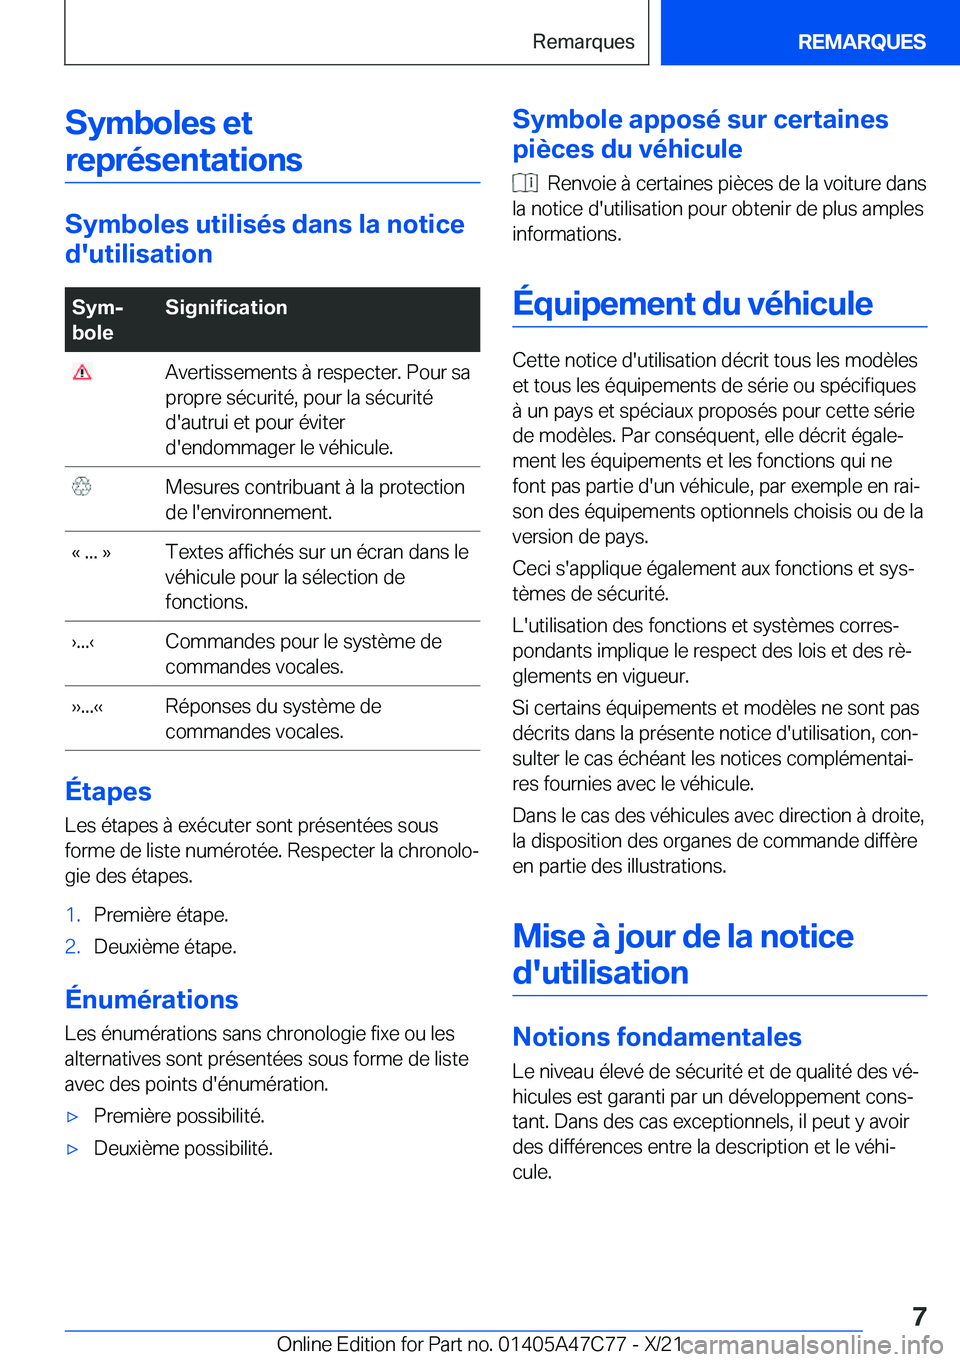 BMW X2 2022  Notices Demploi (in French) �S�y�m�b�o�l�e�s��e�t�r�e�p�r�é�s�e�n�t�a�t�i�o�n�s
�S�y�m�b�o�l�e�s��u�t�i�l�i�s�é�s��d�a�n�s��l�a��n�o�t�i�c�e
�d�'�u�t�i�l�i�s�a�t�i�o�n
�S�y�mj
�b�o�l�e�S�i�g�n�i�f�i�c�a�t�i�o�n��A�v